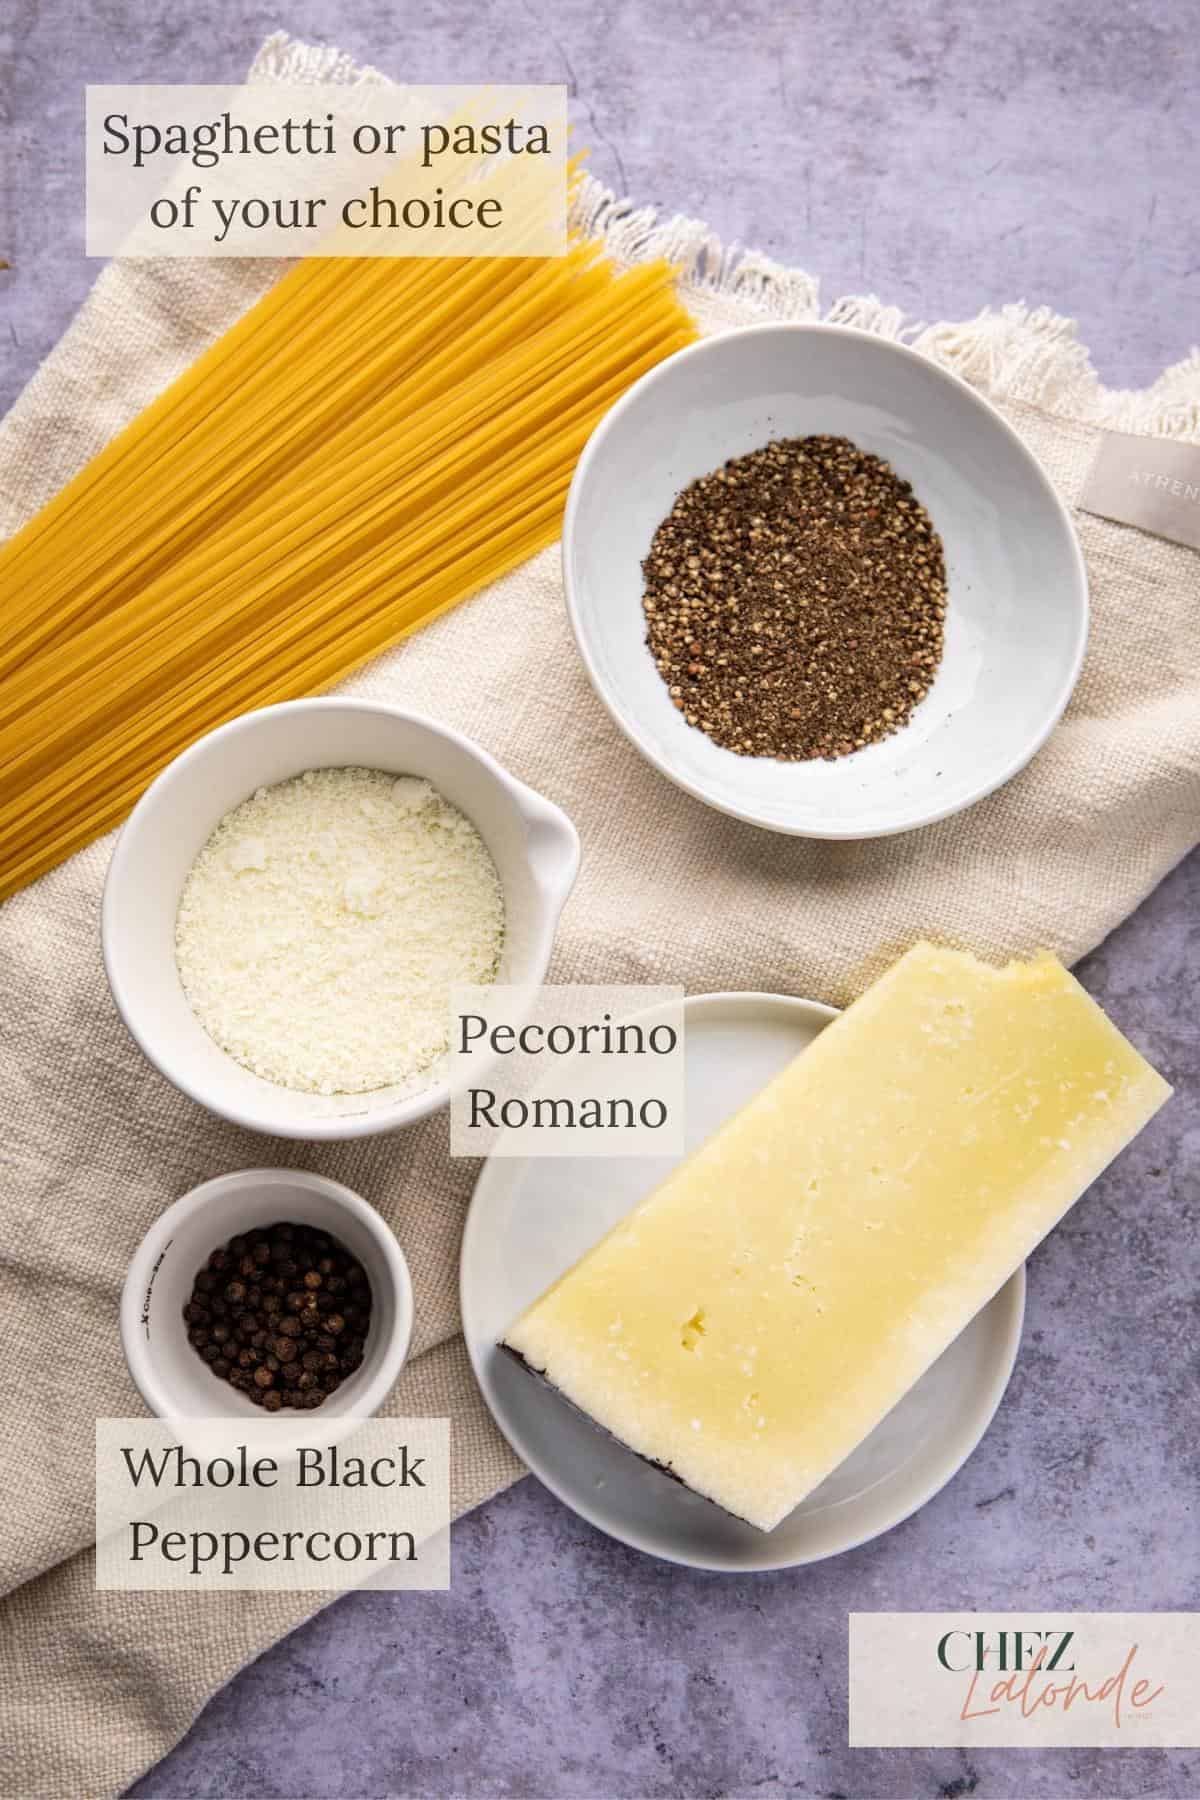 Cacio e pepe ingredients list: Pecorino Romano, black peppercorn, spaghetti. 